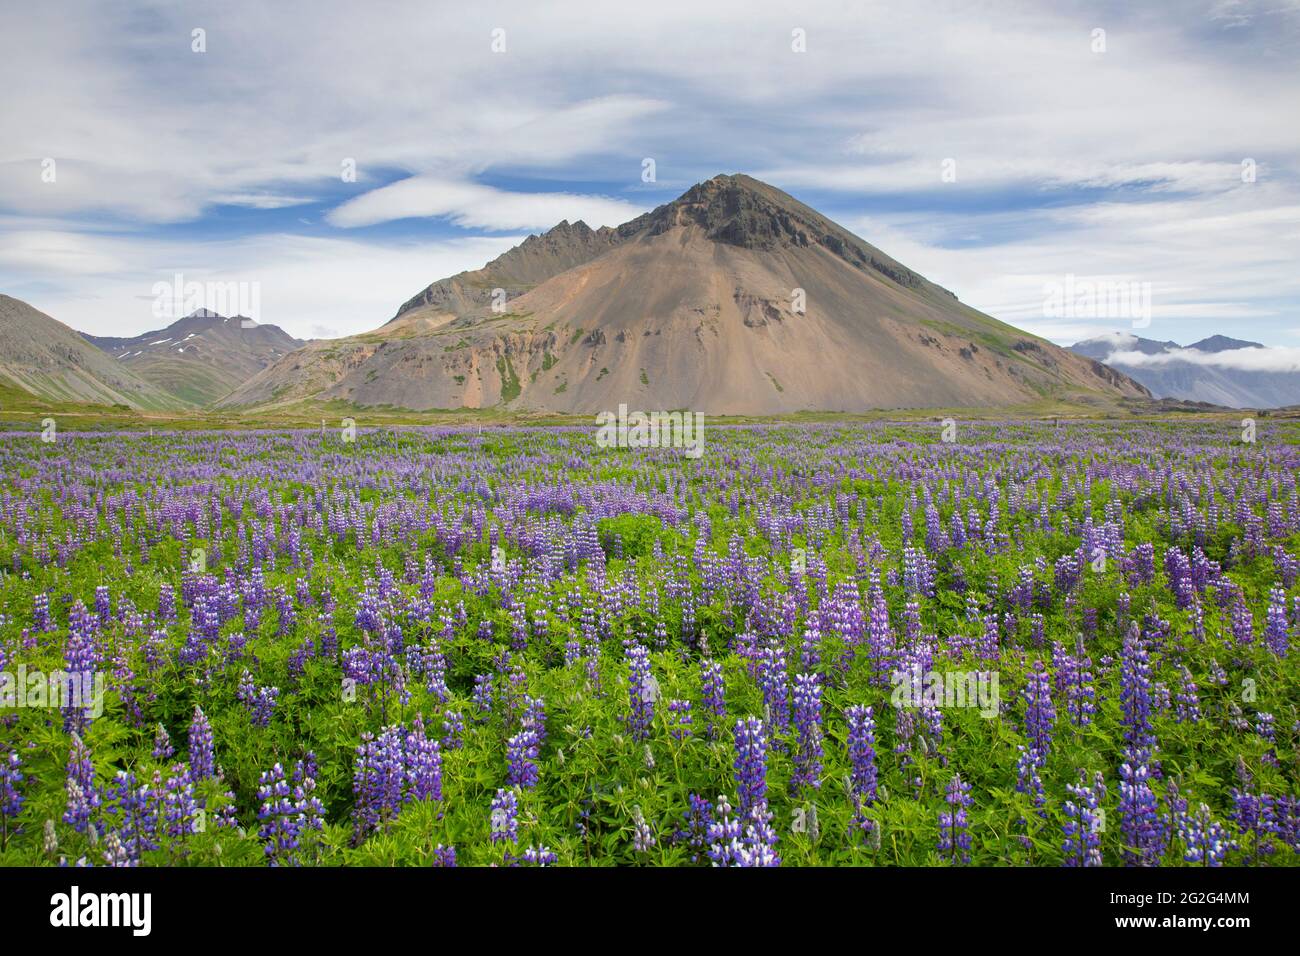 La lupin Nootka (Lupinus nootkatensis) en fleur sur la toundra islandaise en été, envahissent des espèces en Islande mais indigènes en Amérique du Nord Banque D'Images